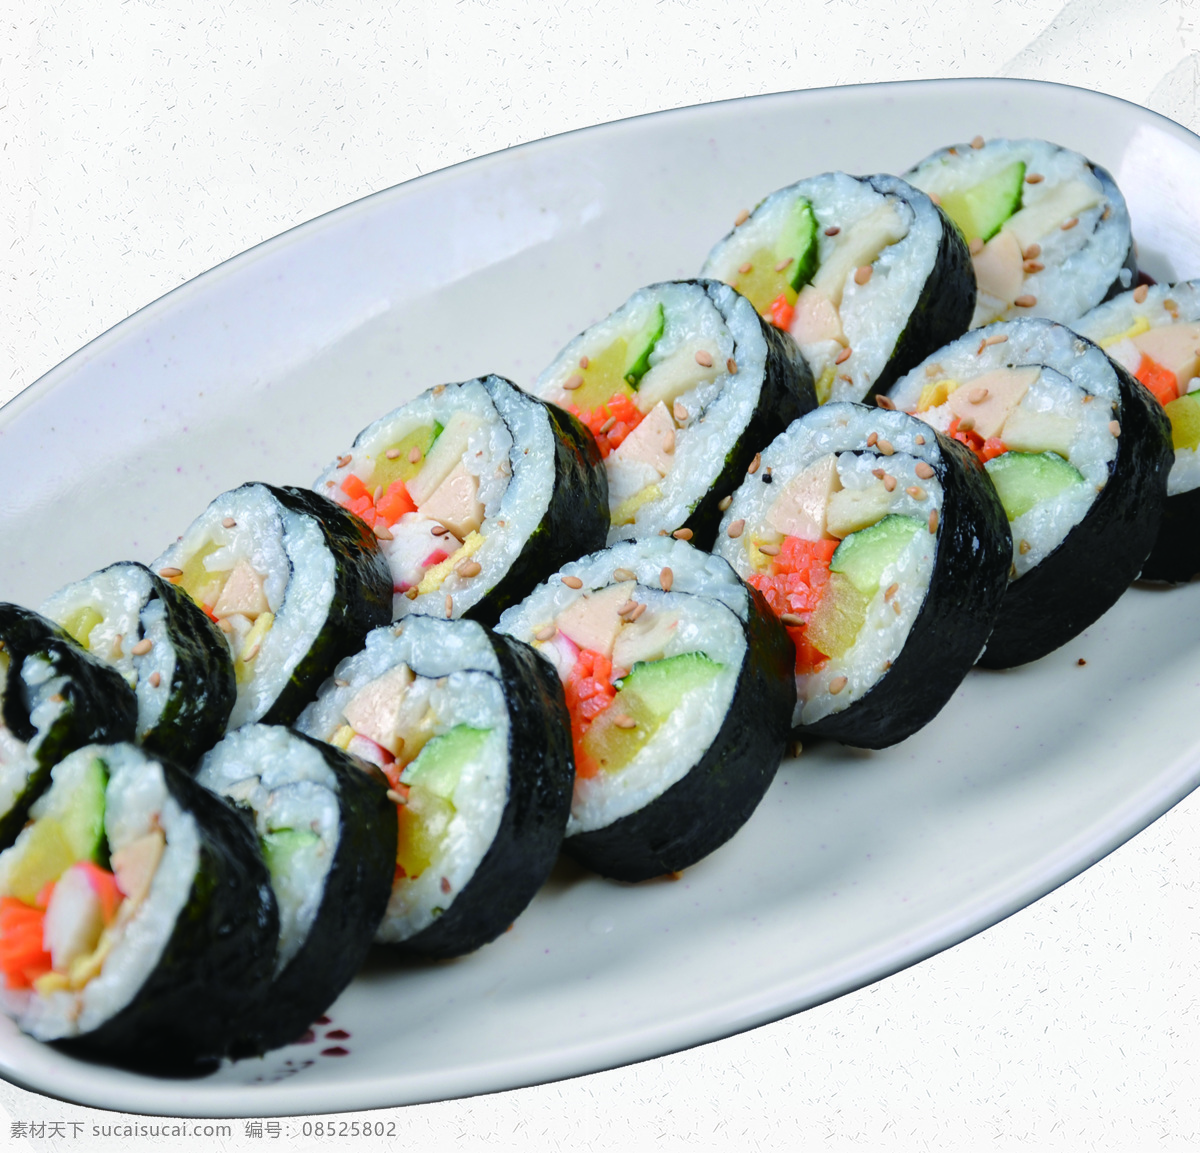 包饭 饭卷 饭团 韩式紫菜包饭 寿司 餐饮美食 传统美食